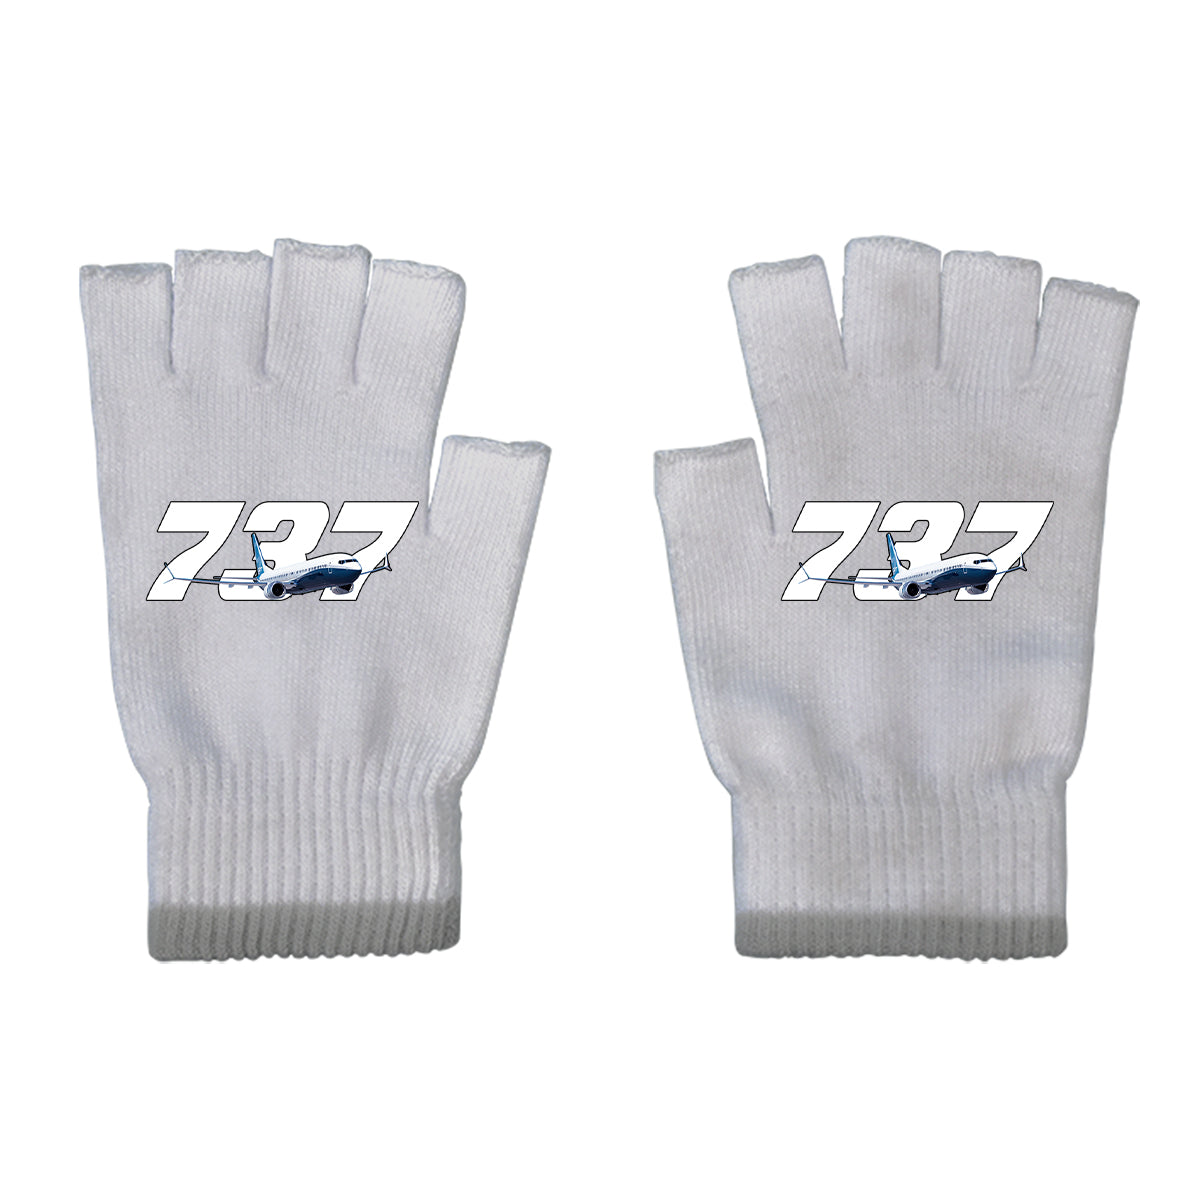 Super Boeing 737 Designed Cut Gloves